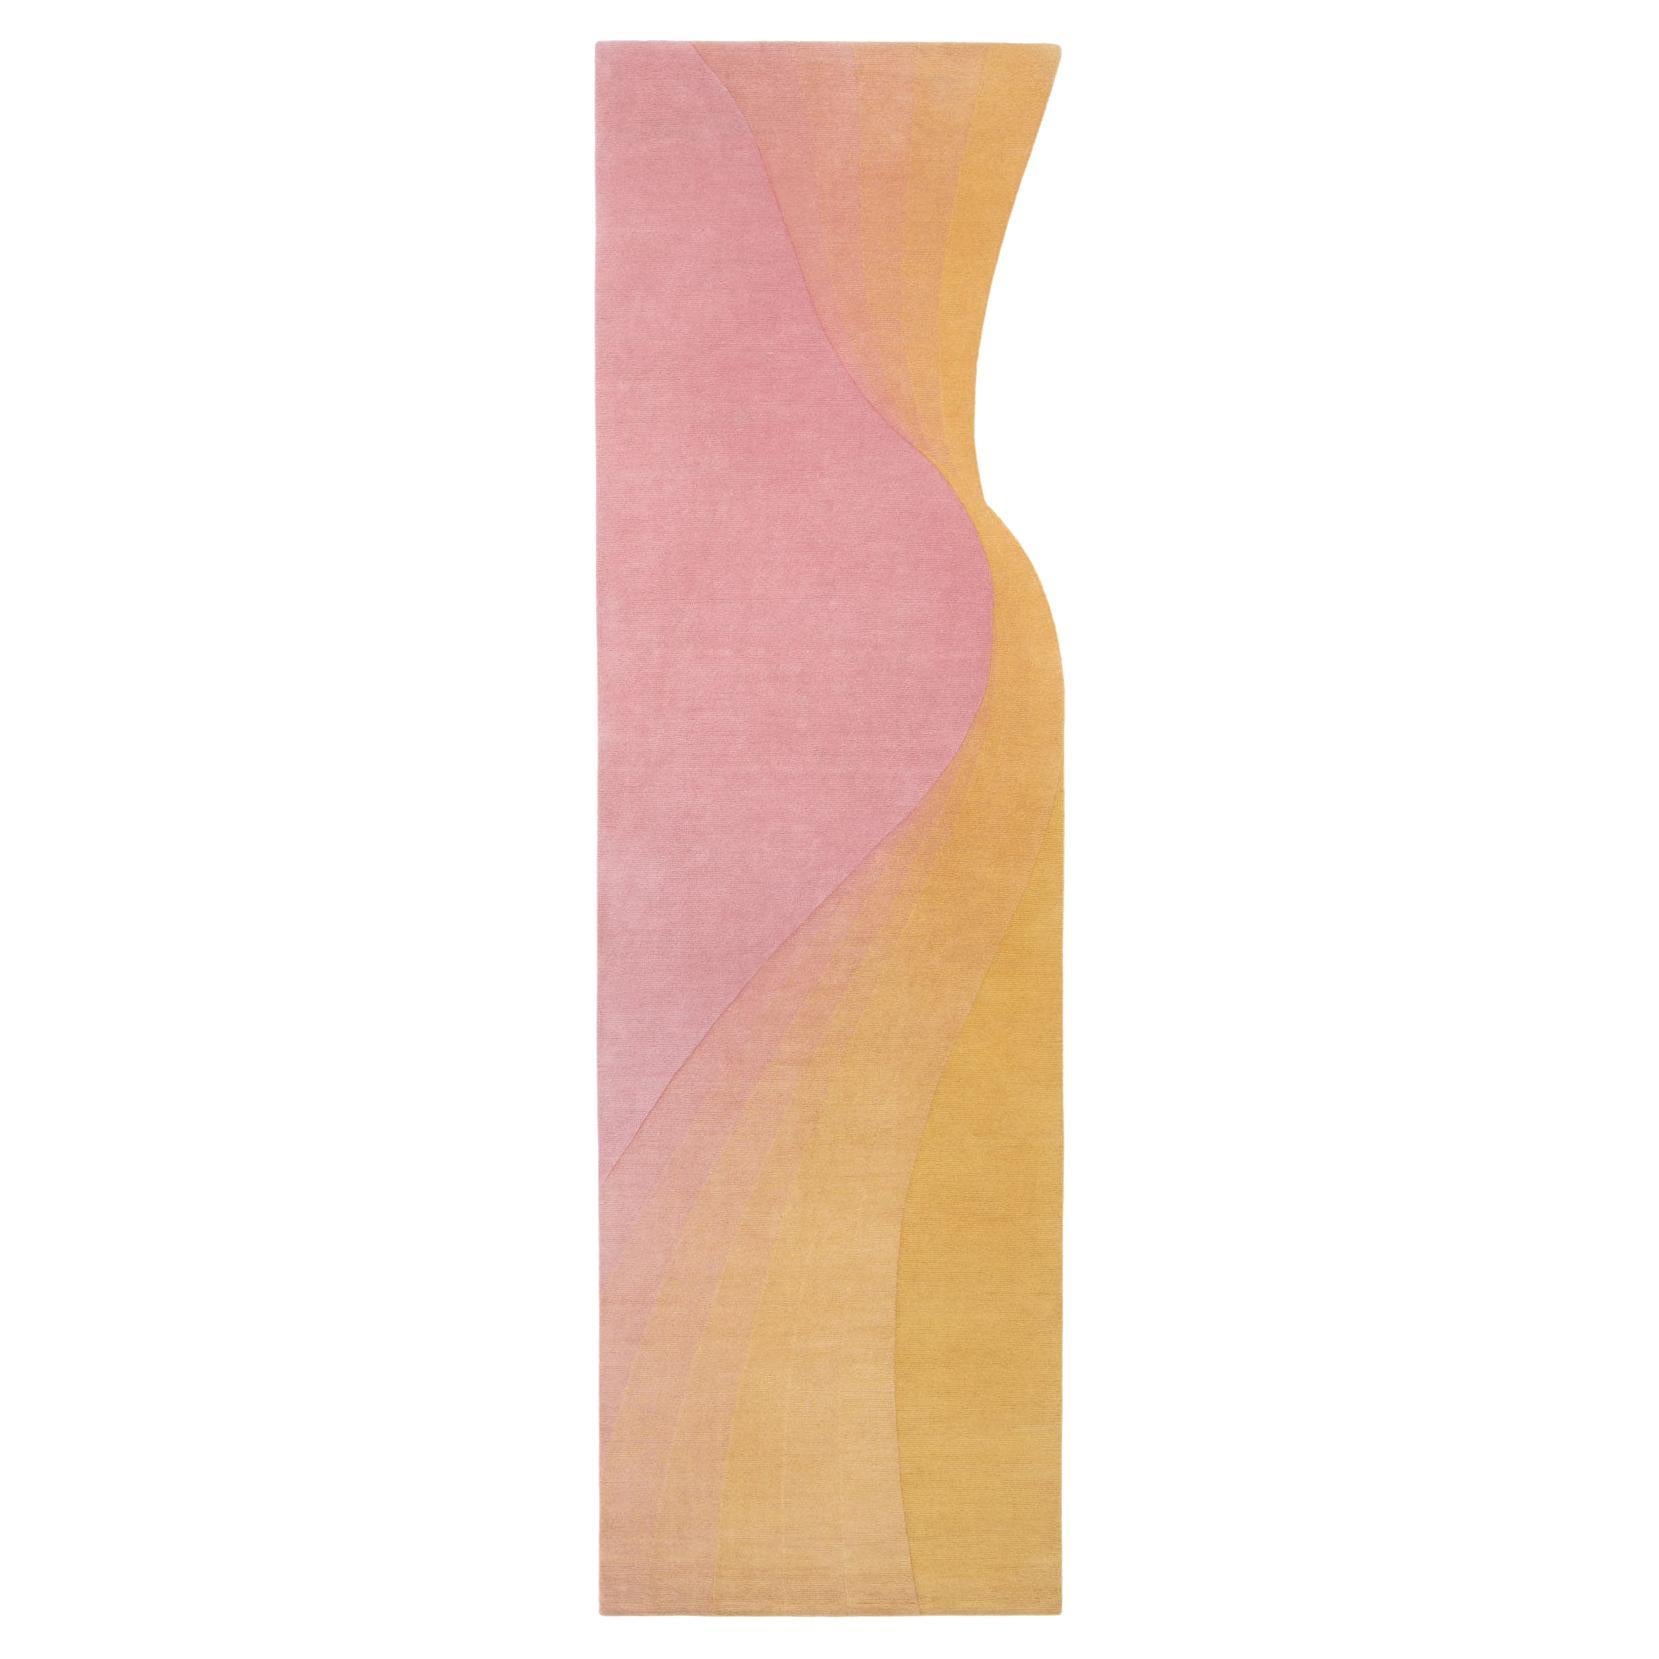 Collection de cc-tapis - Tidal  Tapis Wave Yellow Pink par Germans Ermičs